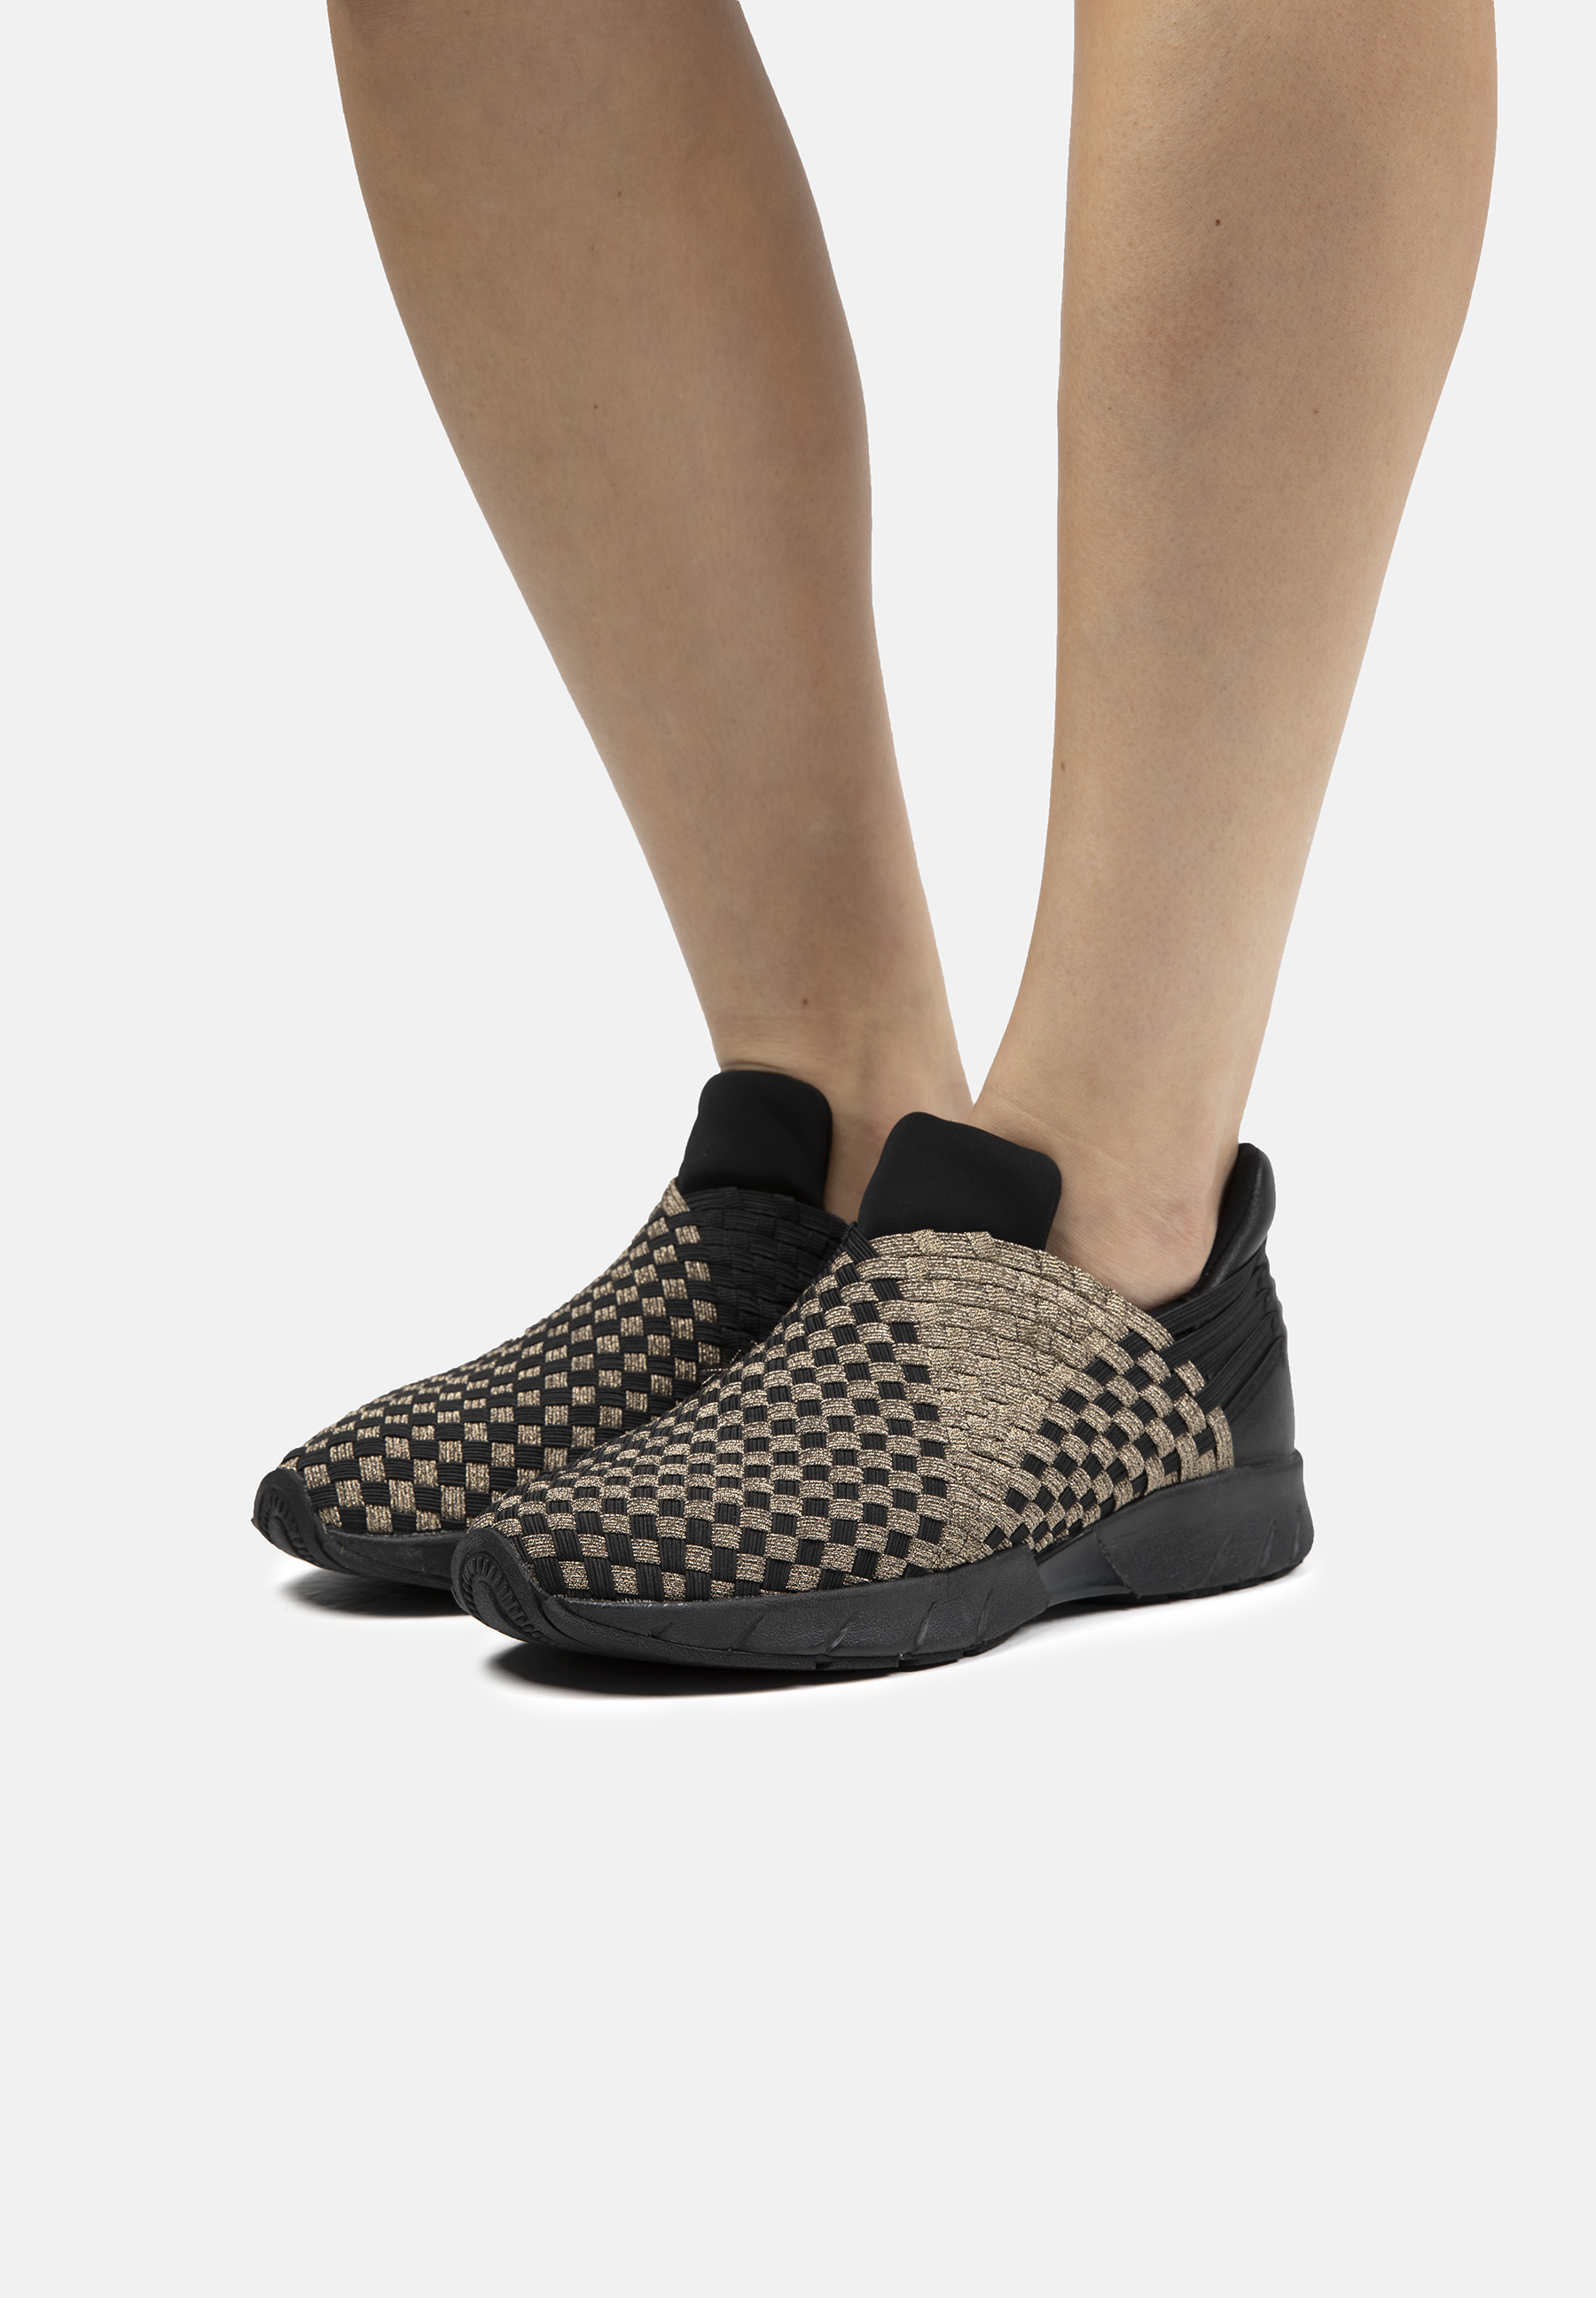 Zapatillas Deportivas De Mujer Bernie Mev De Textil En Bronce (talla 35 A 42)